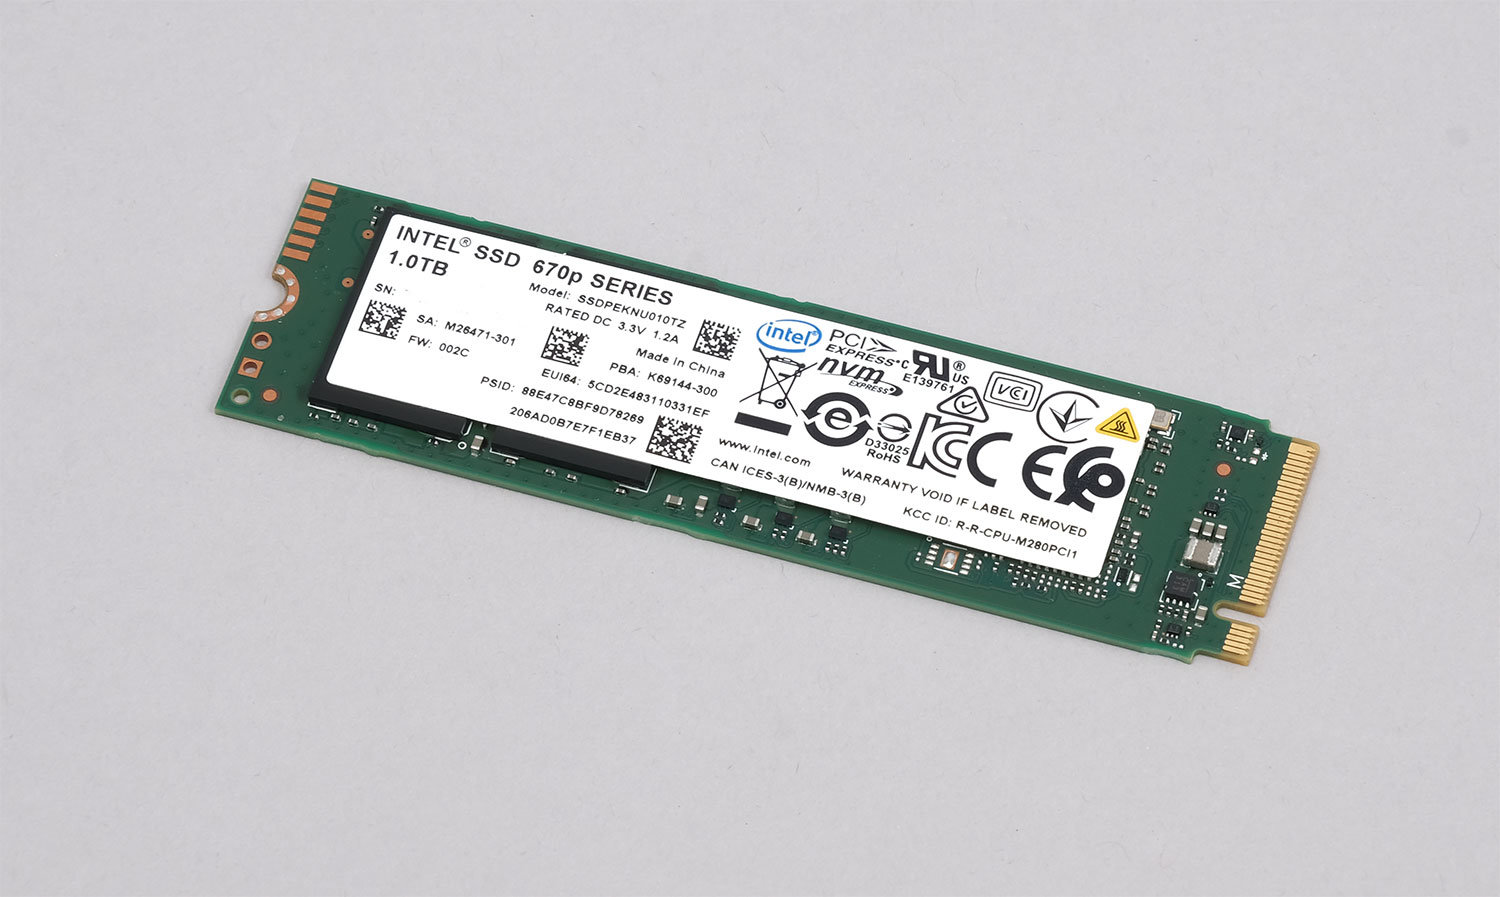 PCIe 4.0より速い!? リアルな検証で分かったIntel SSD 670pの真の実力 ...